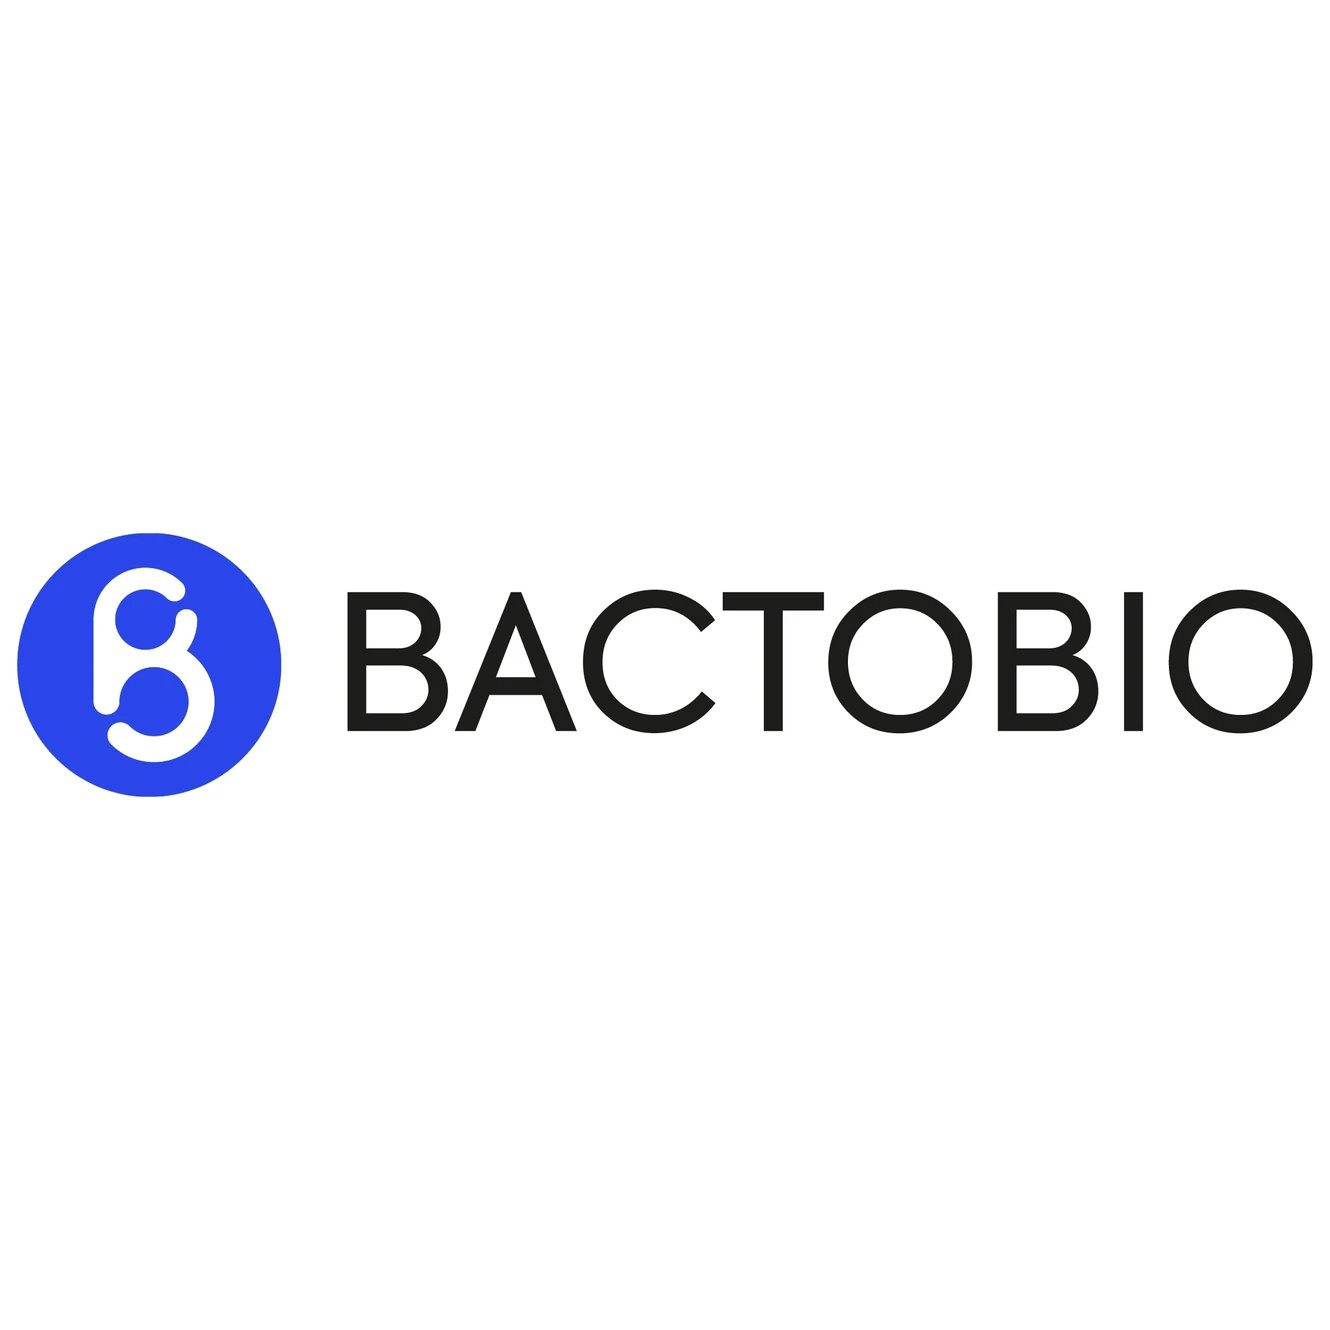 Bactobio